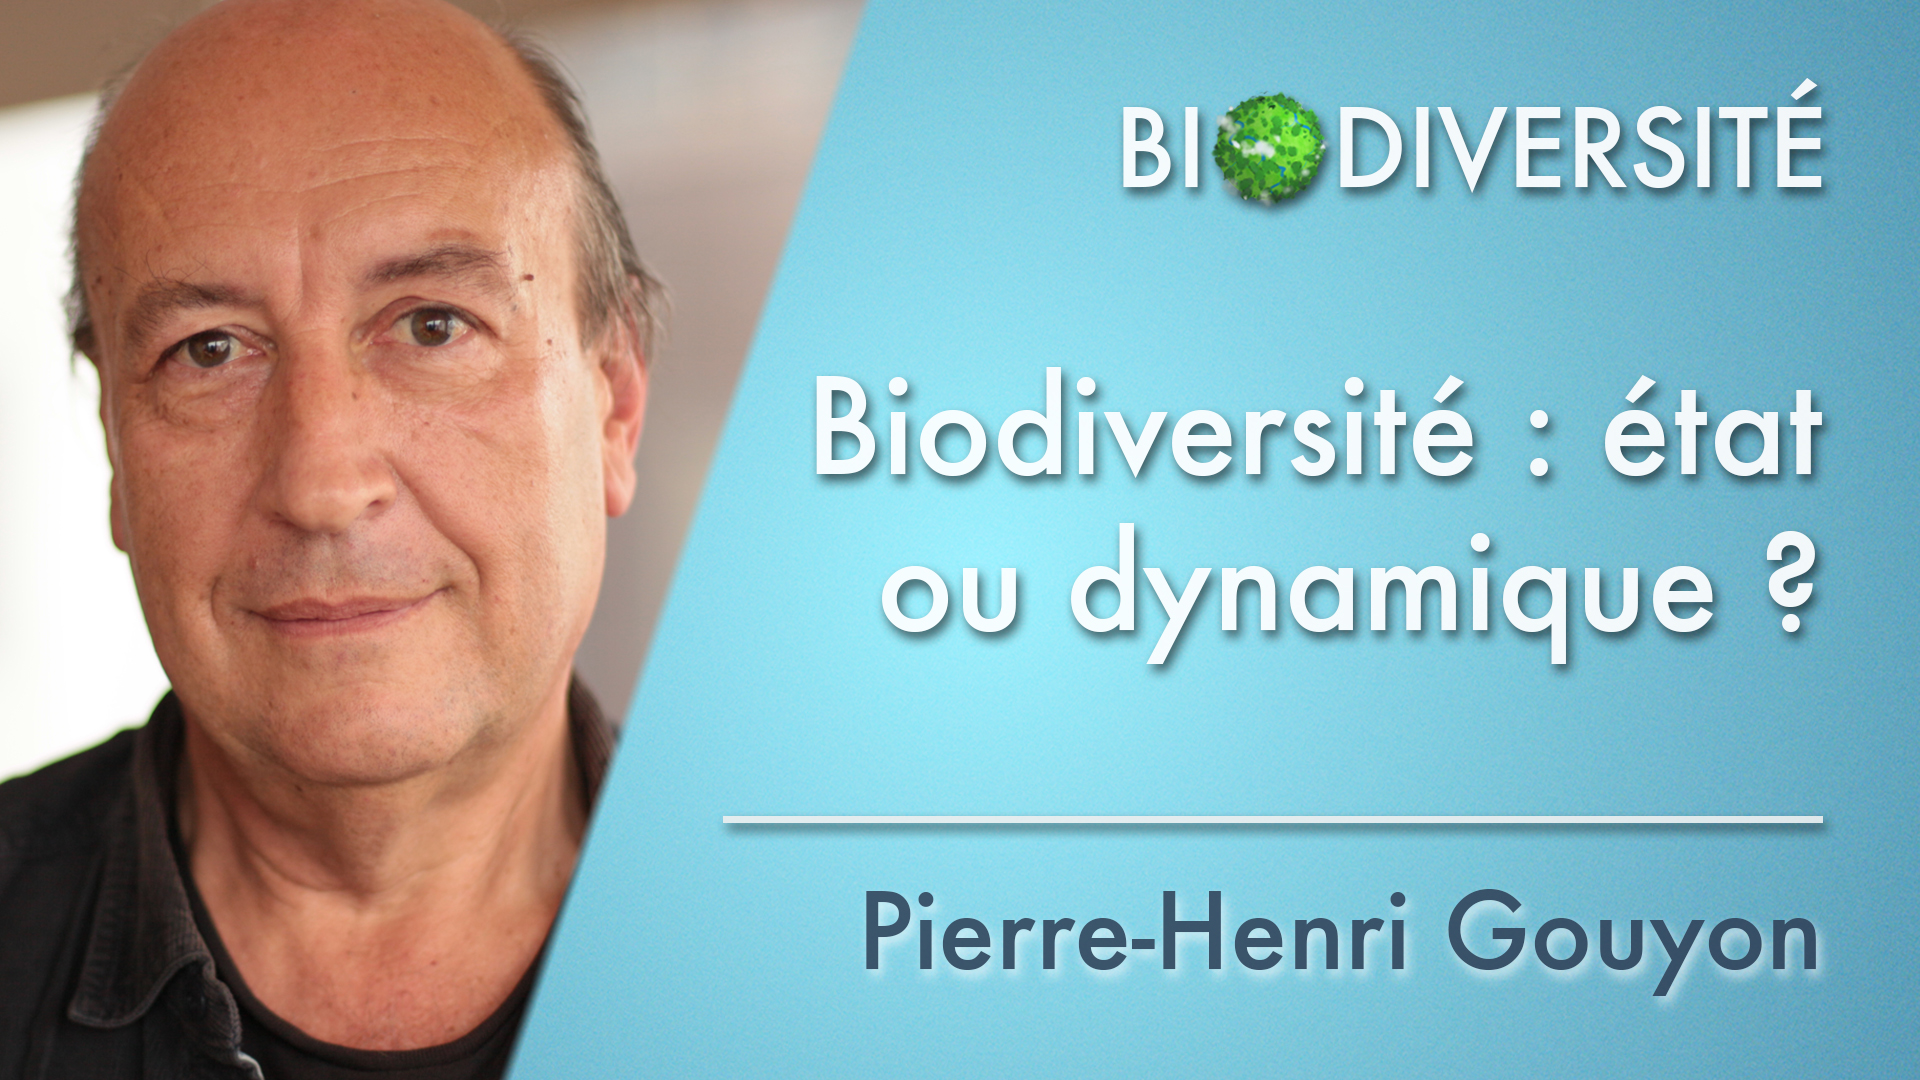 2. Biodiversité : état ou dynamique ?